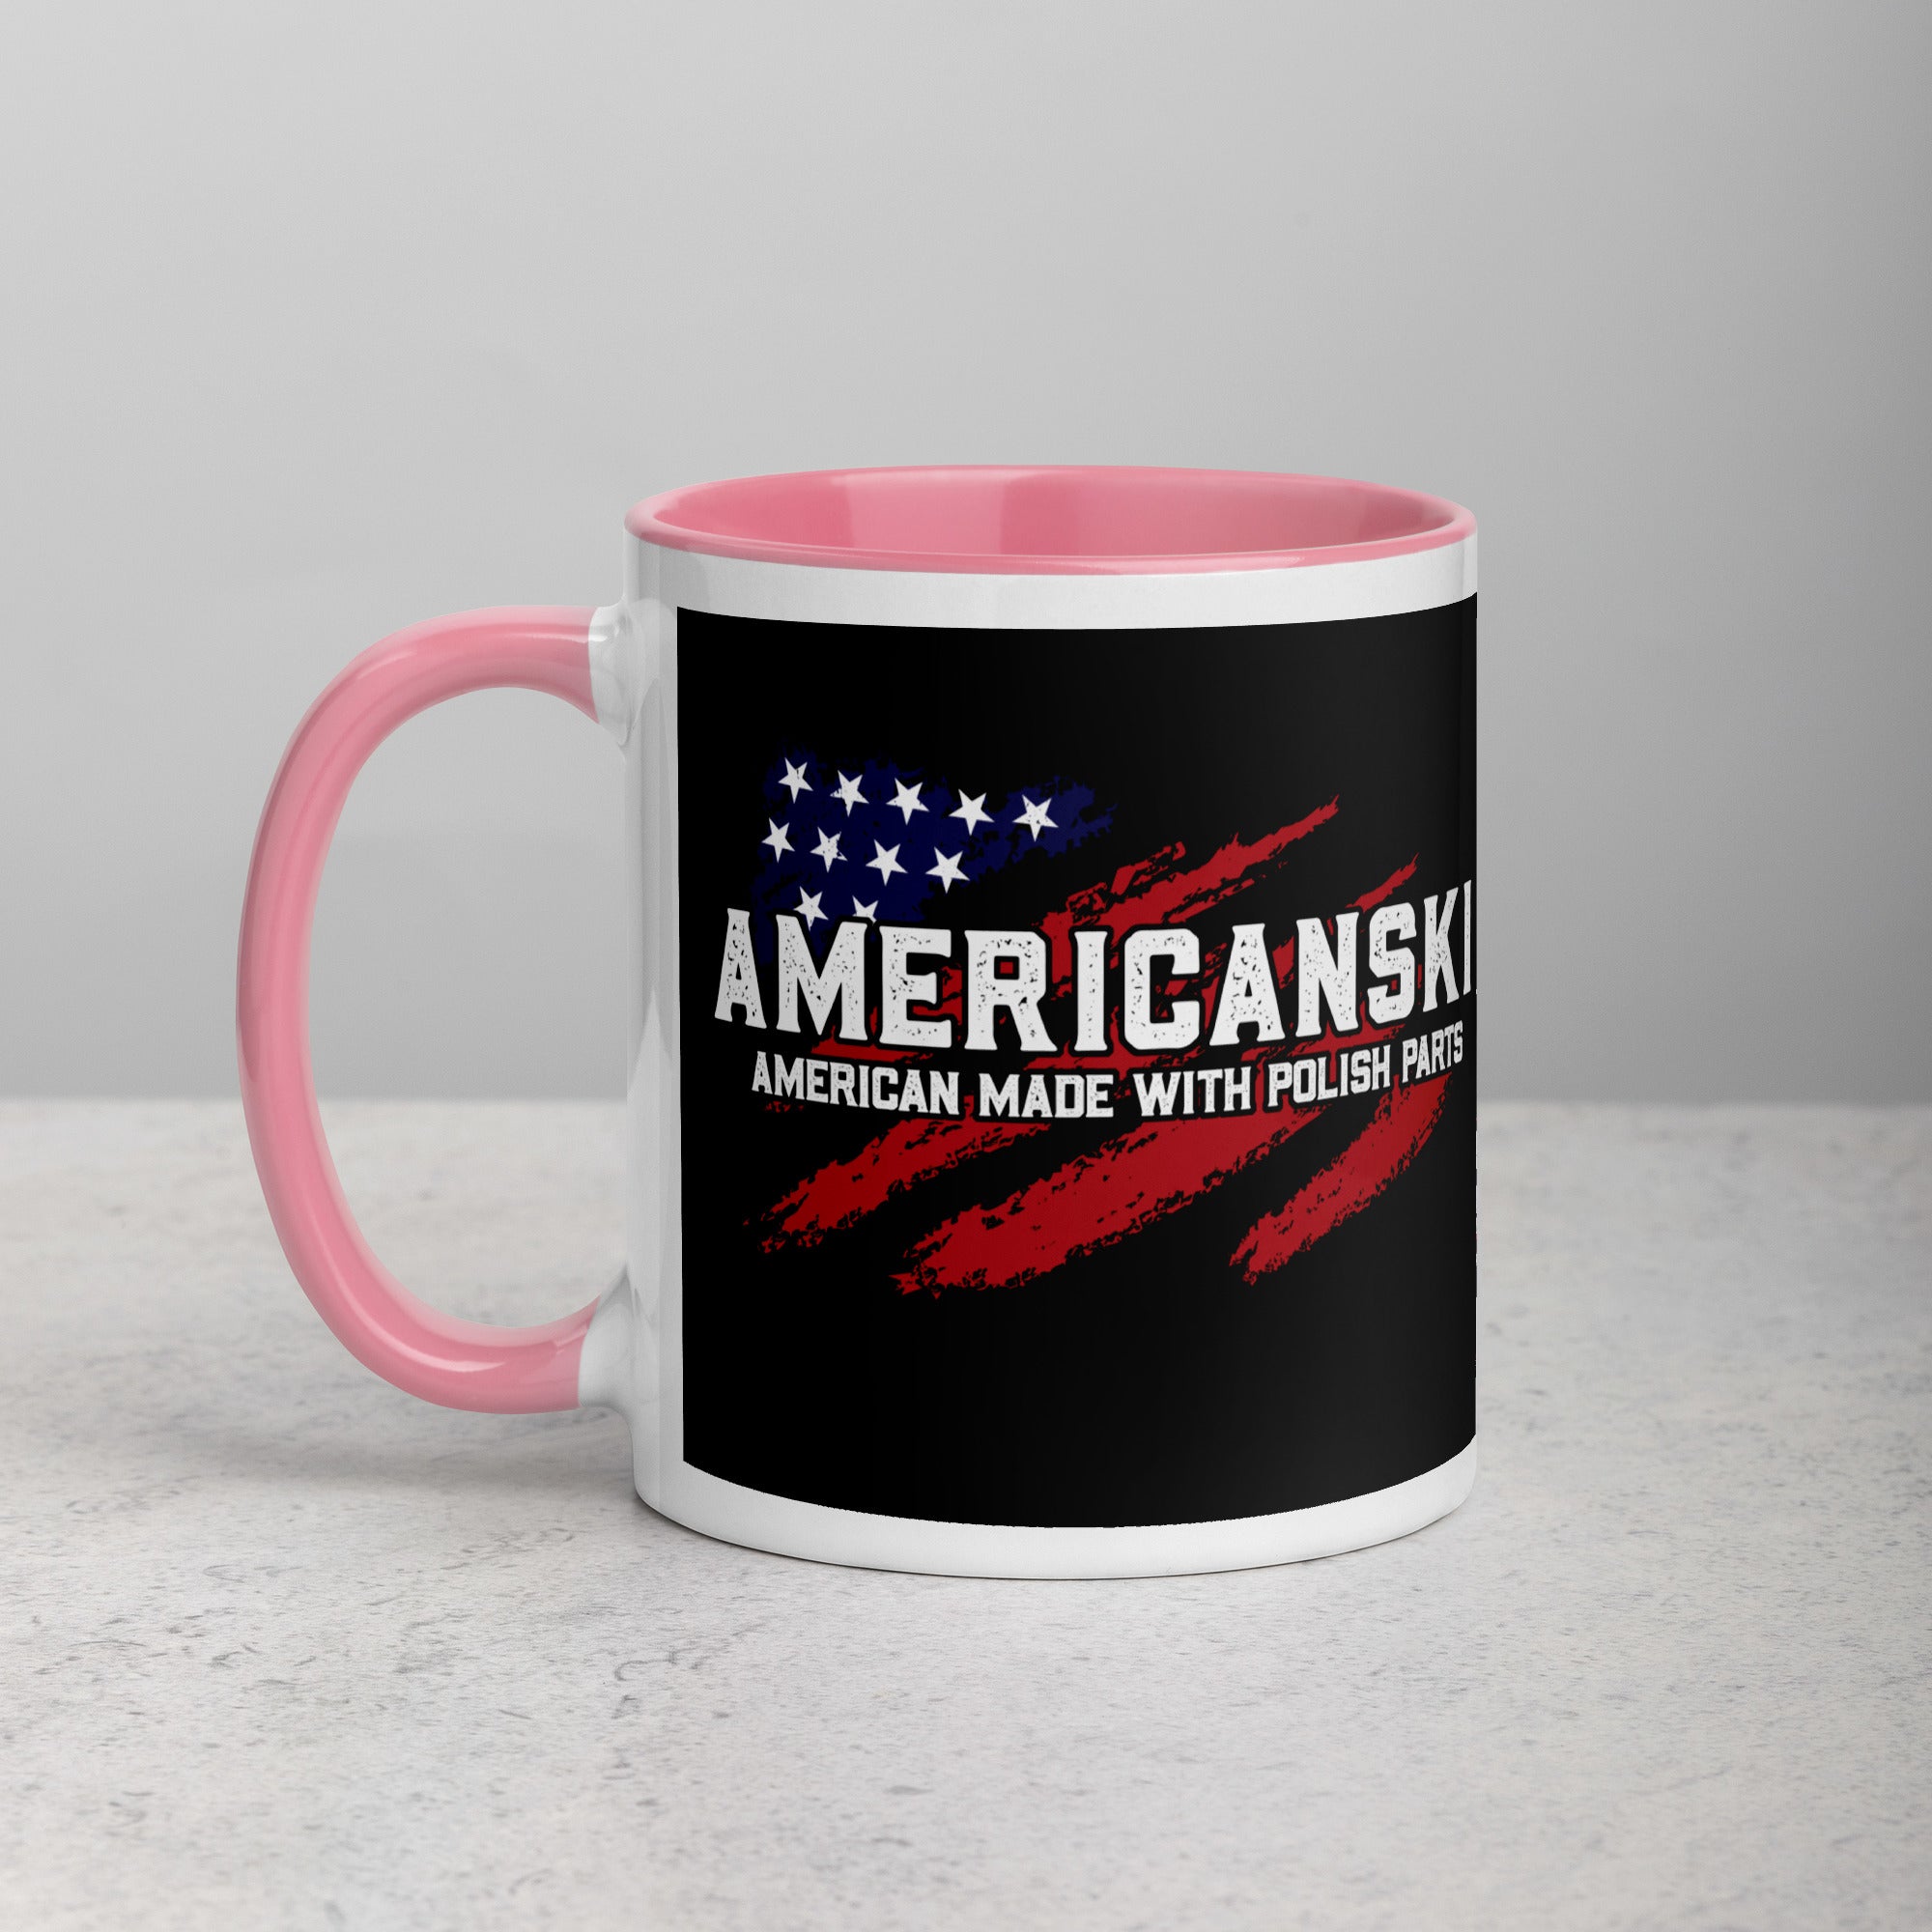 Americanski Coffee Mug with Color Inside  Polish Shirt Store Pink 11 oz 